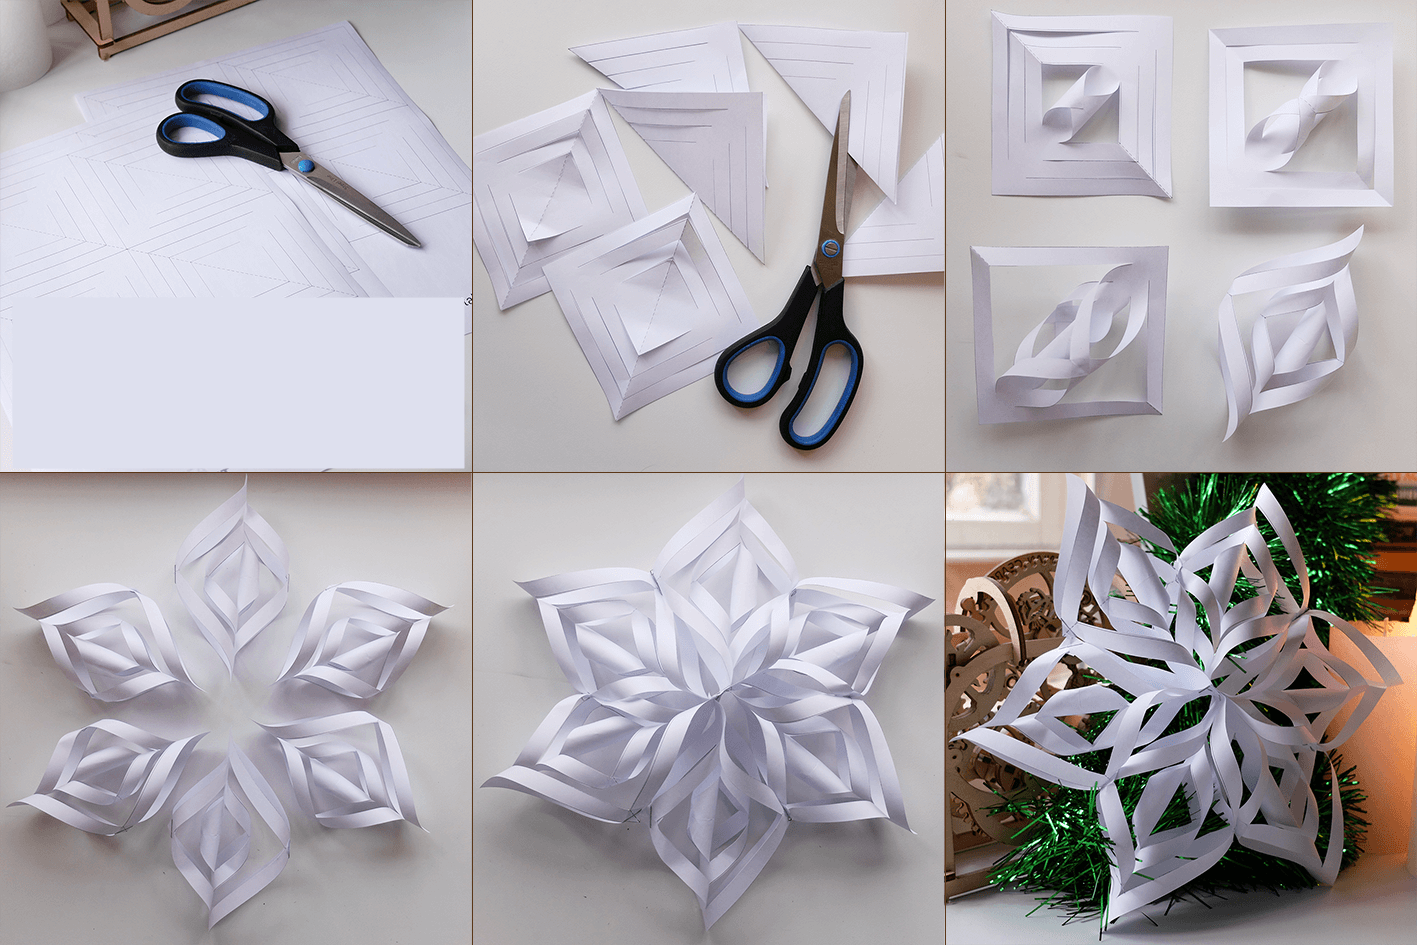 Объемные снежинки из бумаги своими руками пошагово — 12 идей